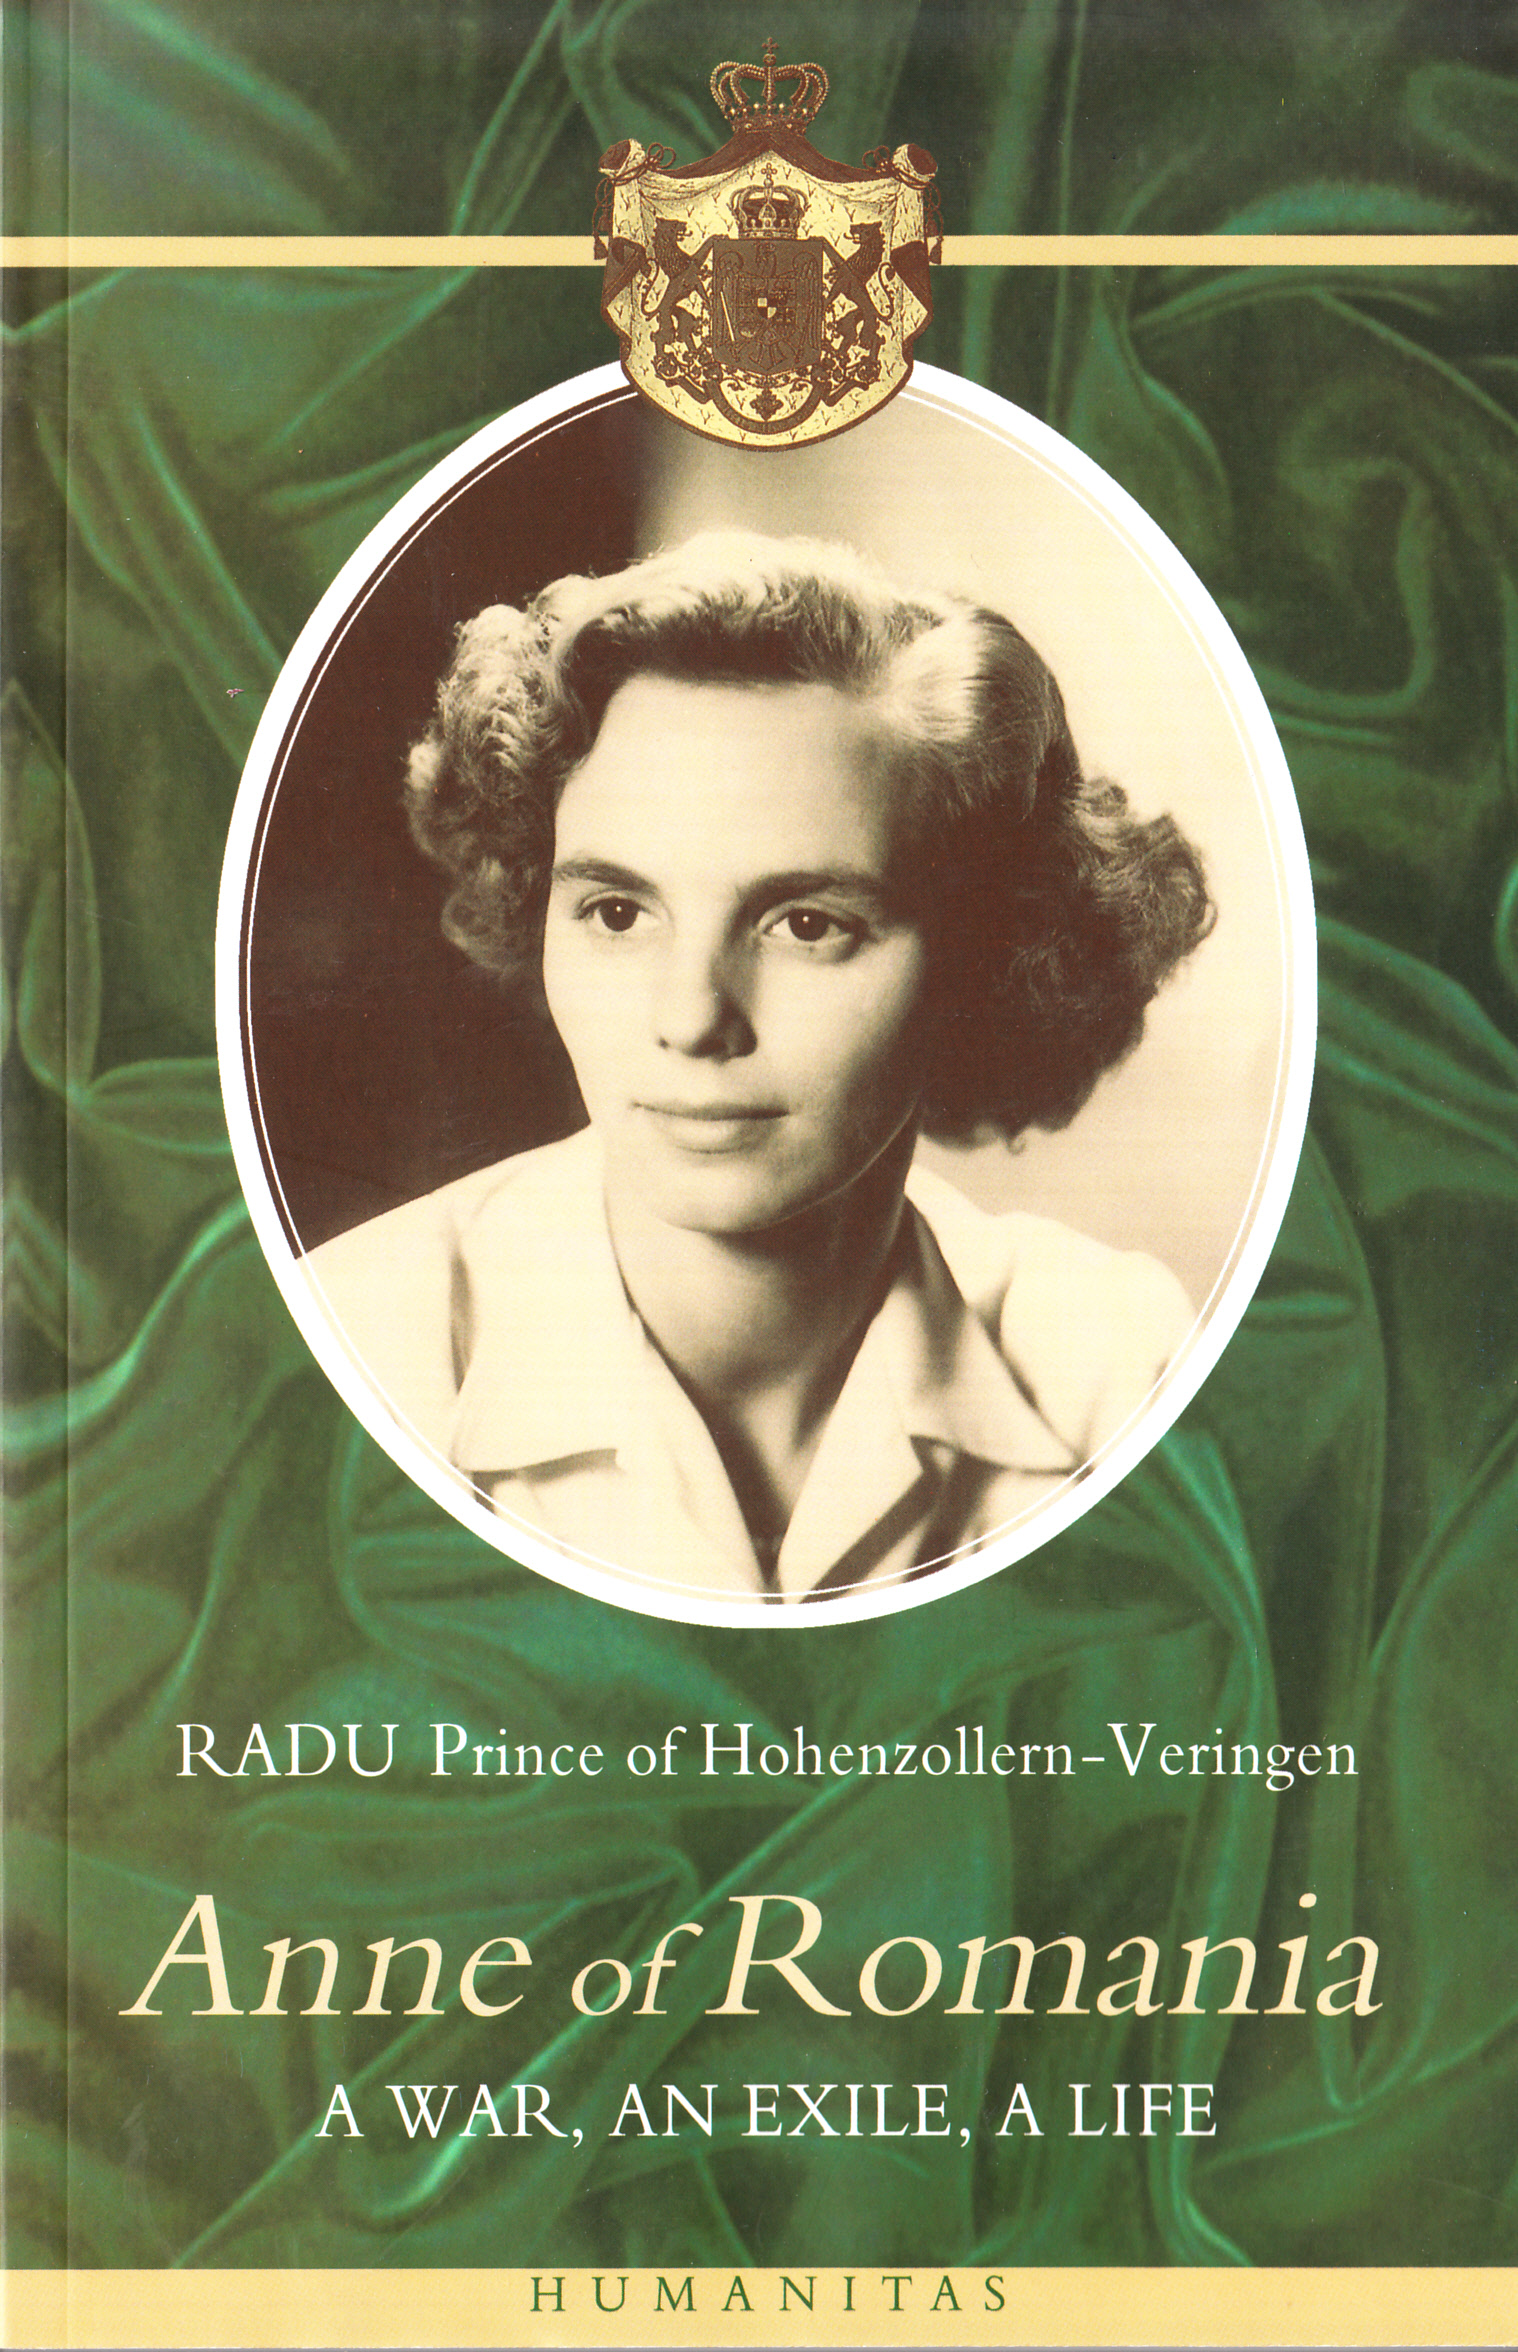 Anne of Romania: A war, an exile, a life - Radu de Hohenzollern-Veringen